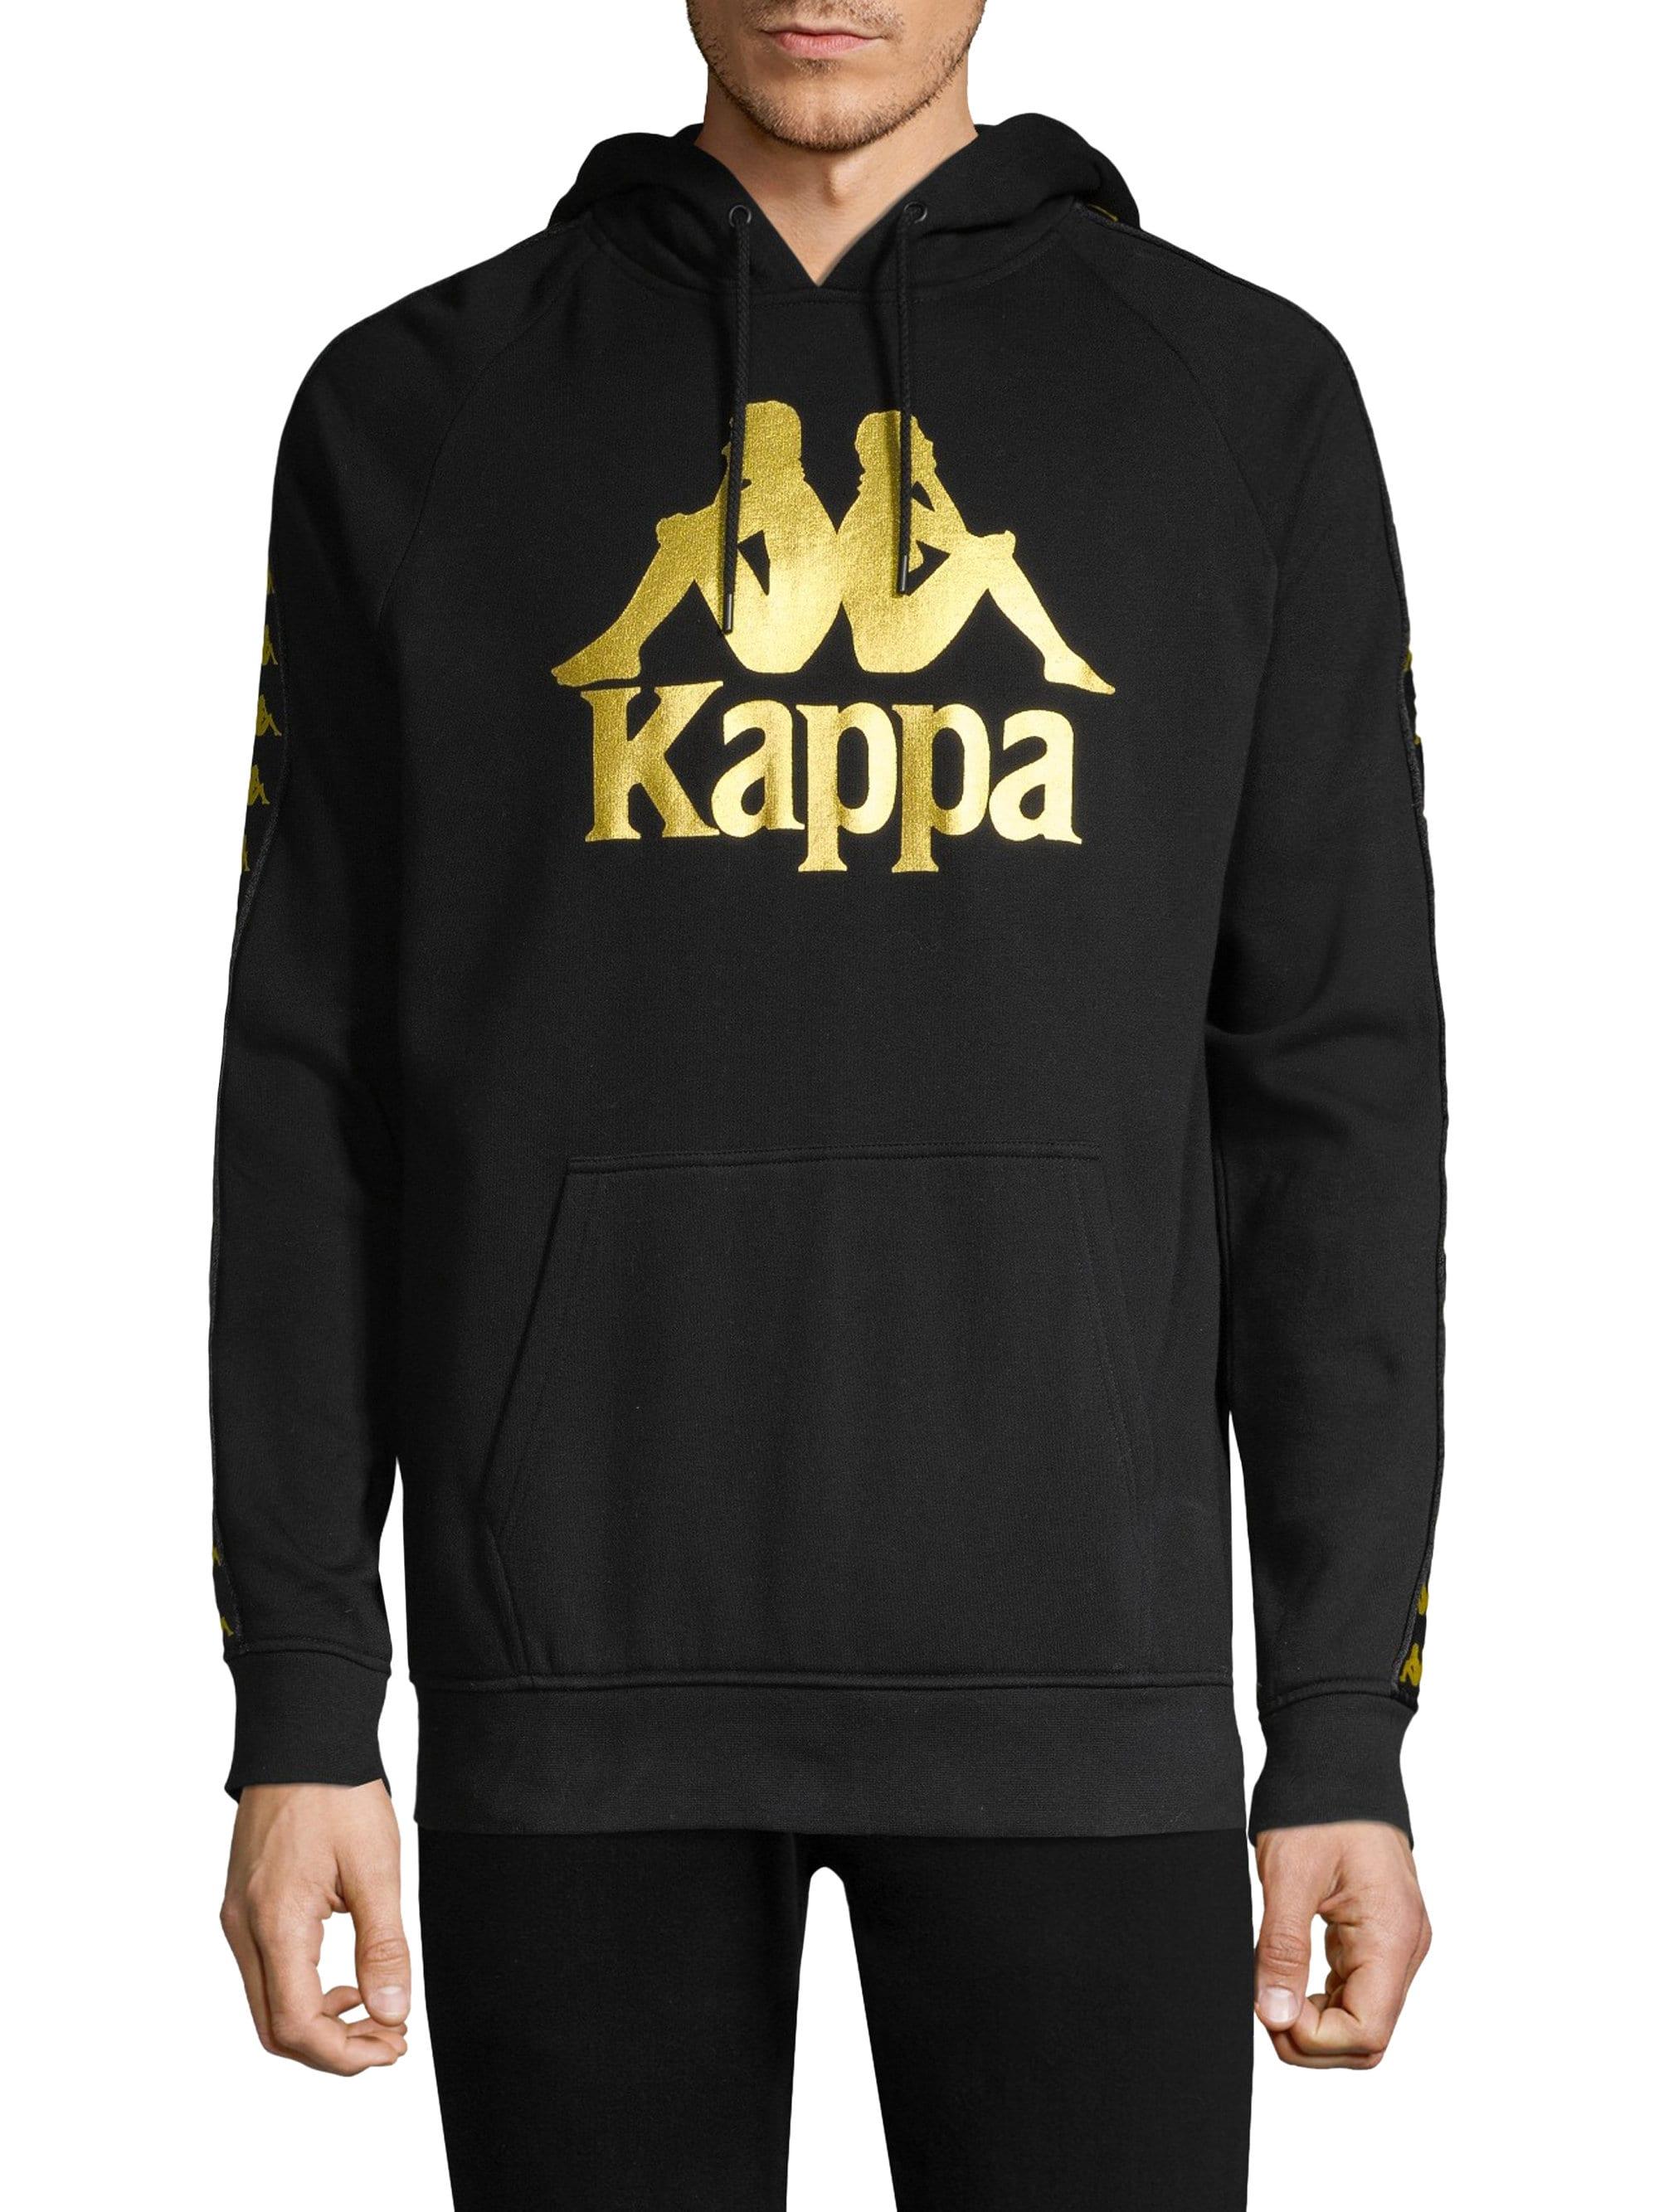 Kappa Fleece Authentic Hurtado Hoodie in Black for Men - Lyst